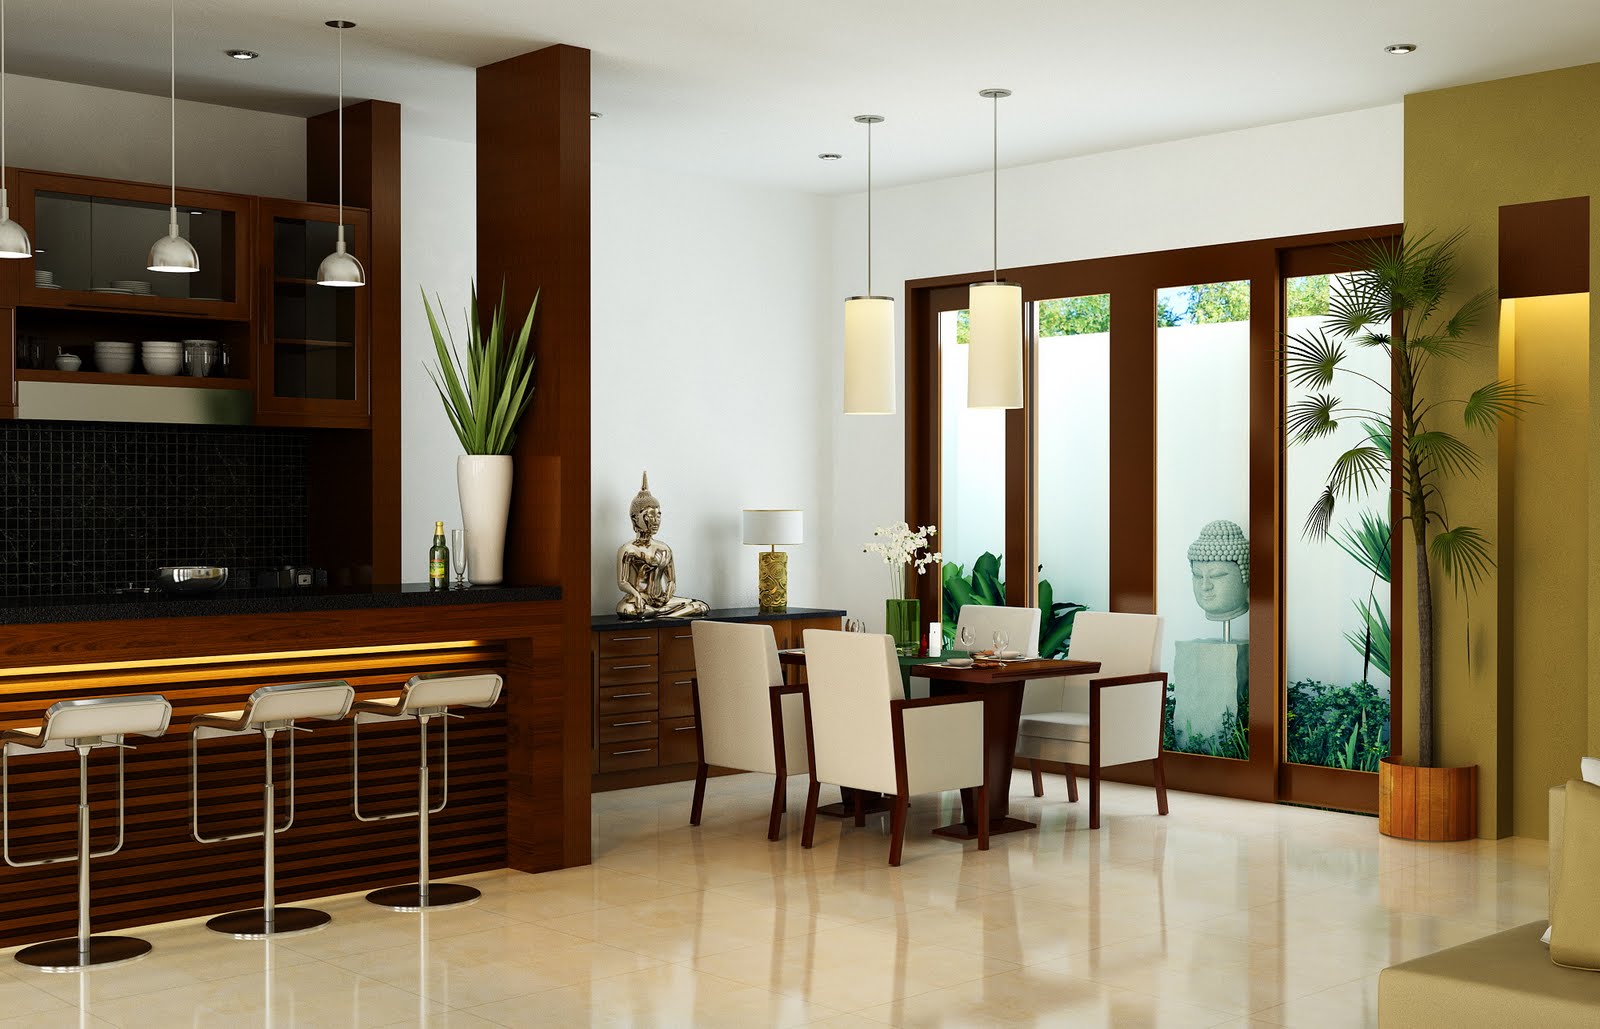 Foto Desain  Interior  Rumah  Minimalis  Home Design Studio